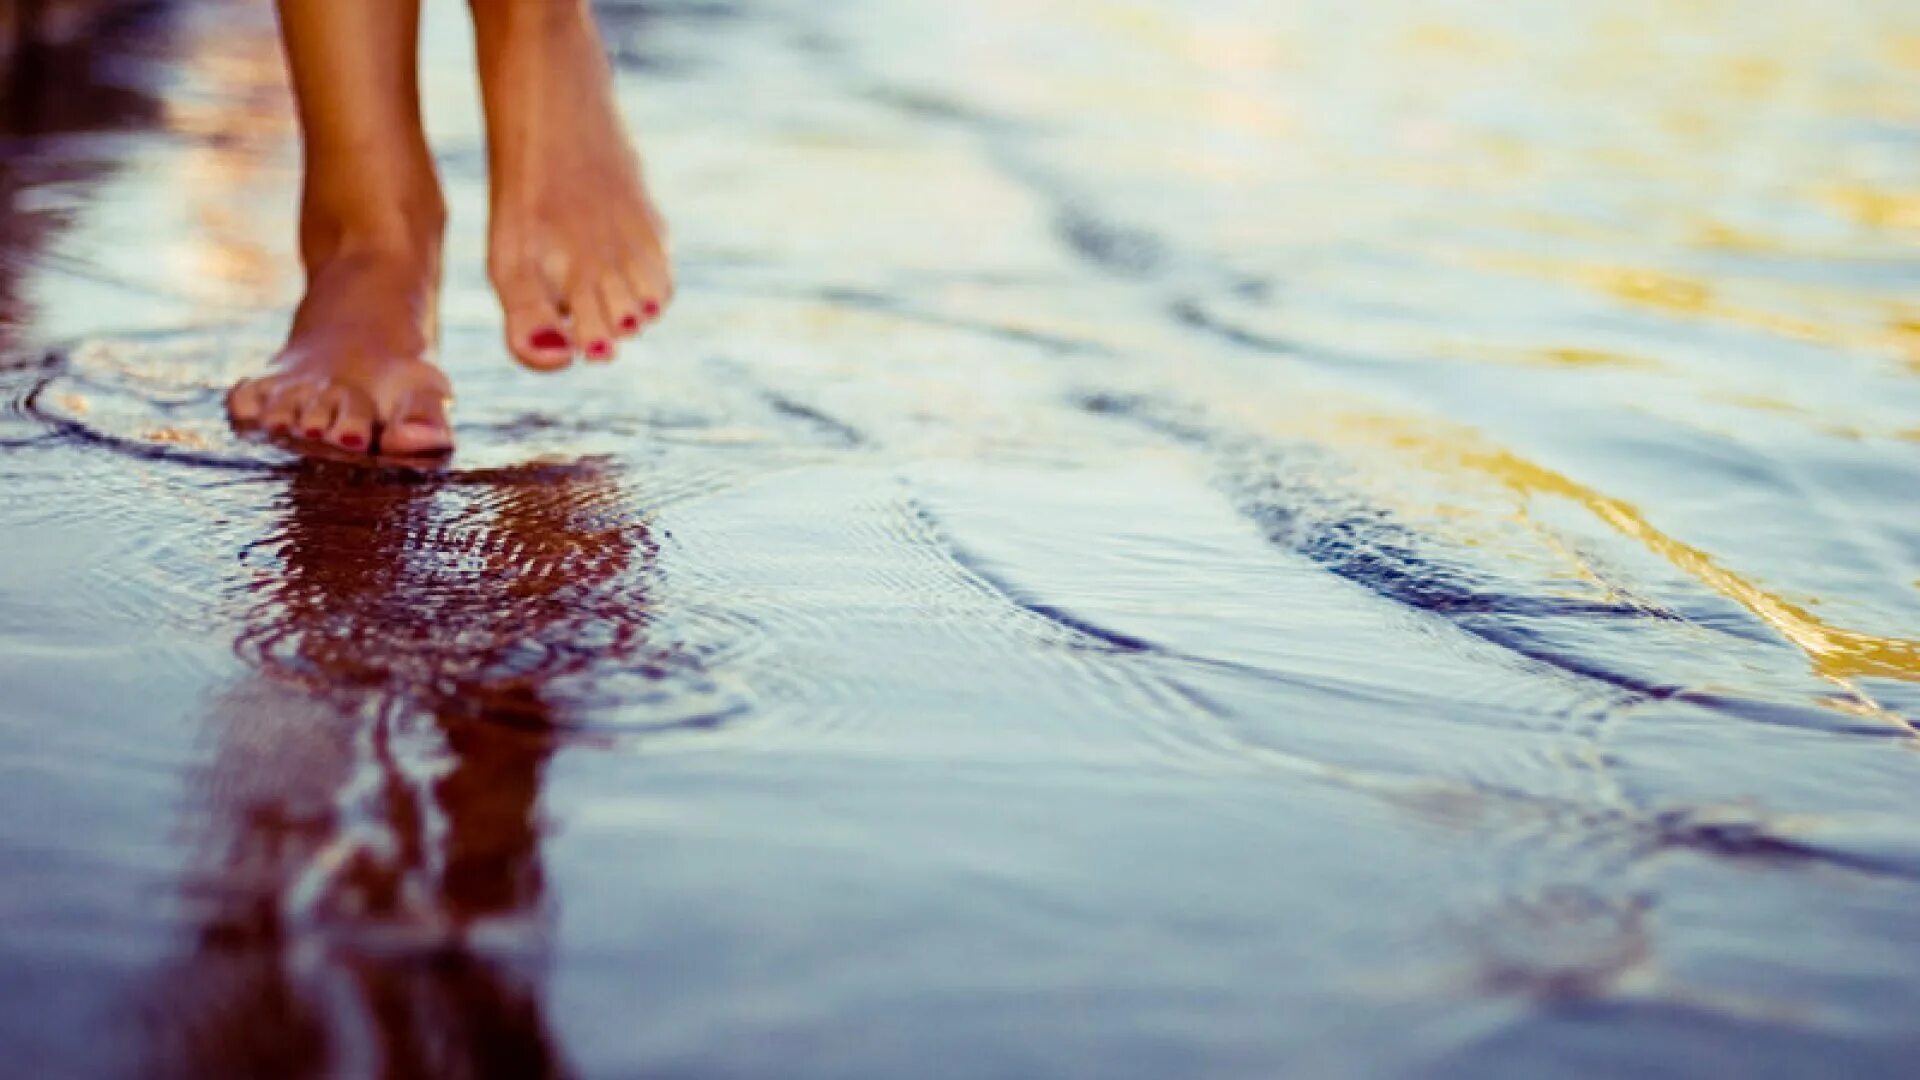 Будет намного проще. Ноги по воде. Босые ноги в воде. Ноги в луже. Маленькими шагами к счастью.